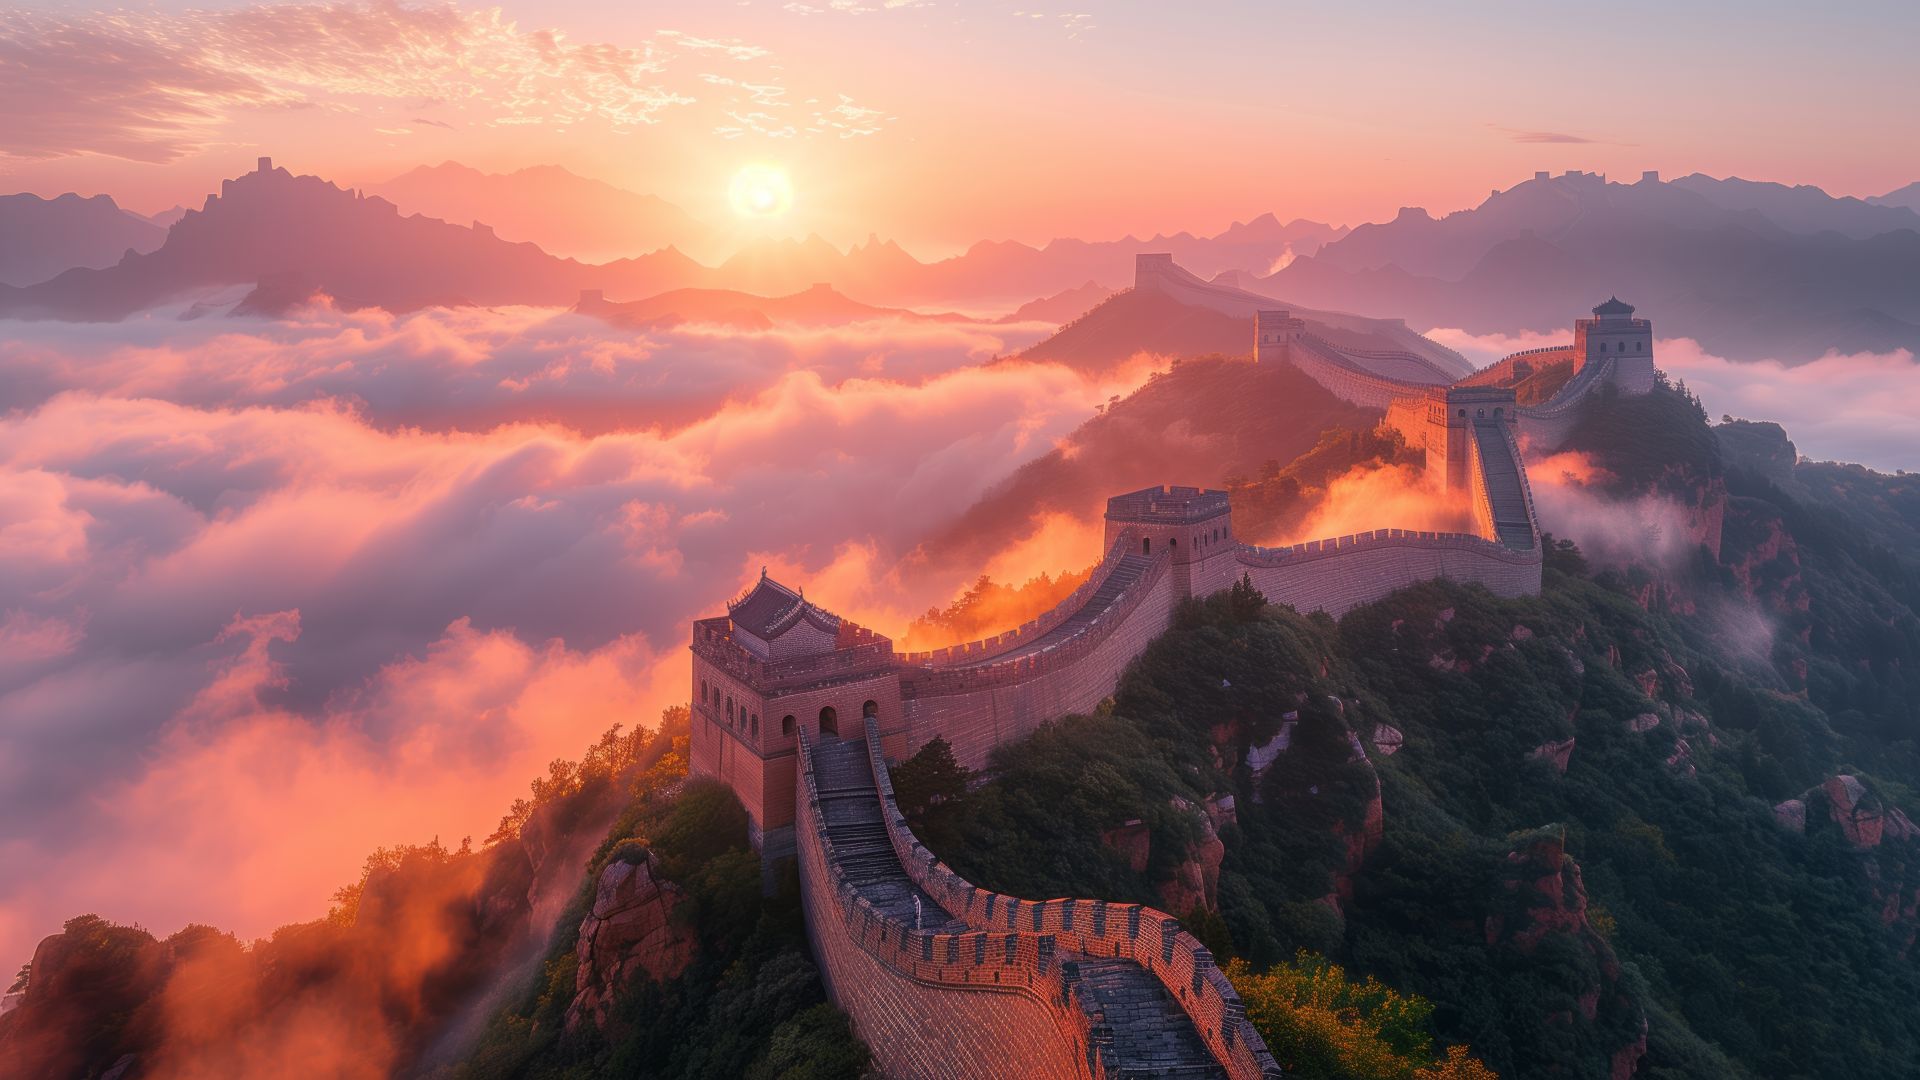 Chinese wall, mountains, sunset (horizontal)